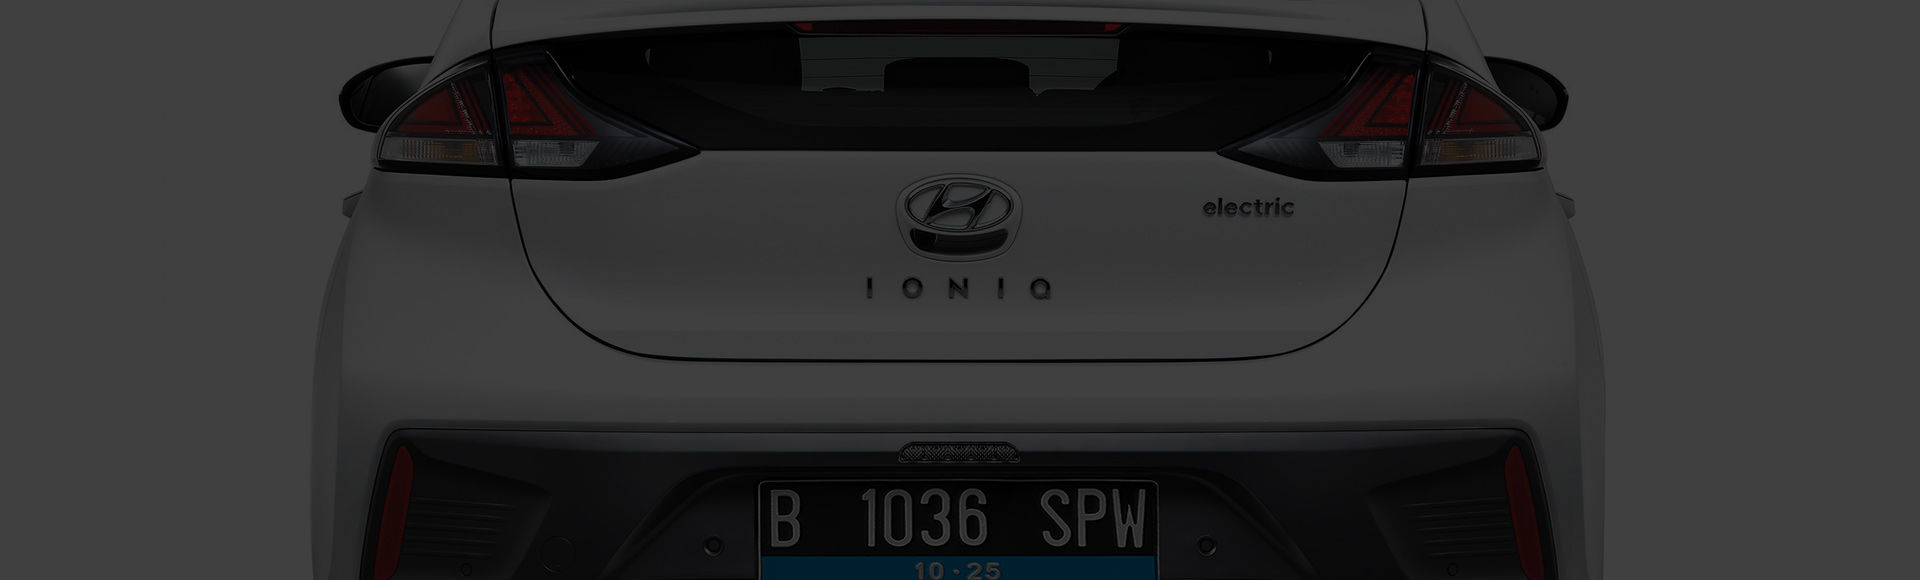 IONIQ electric exterior rear design